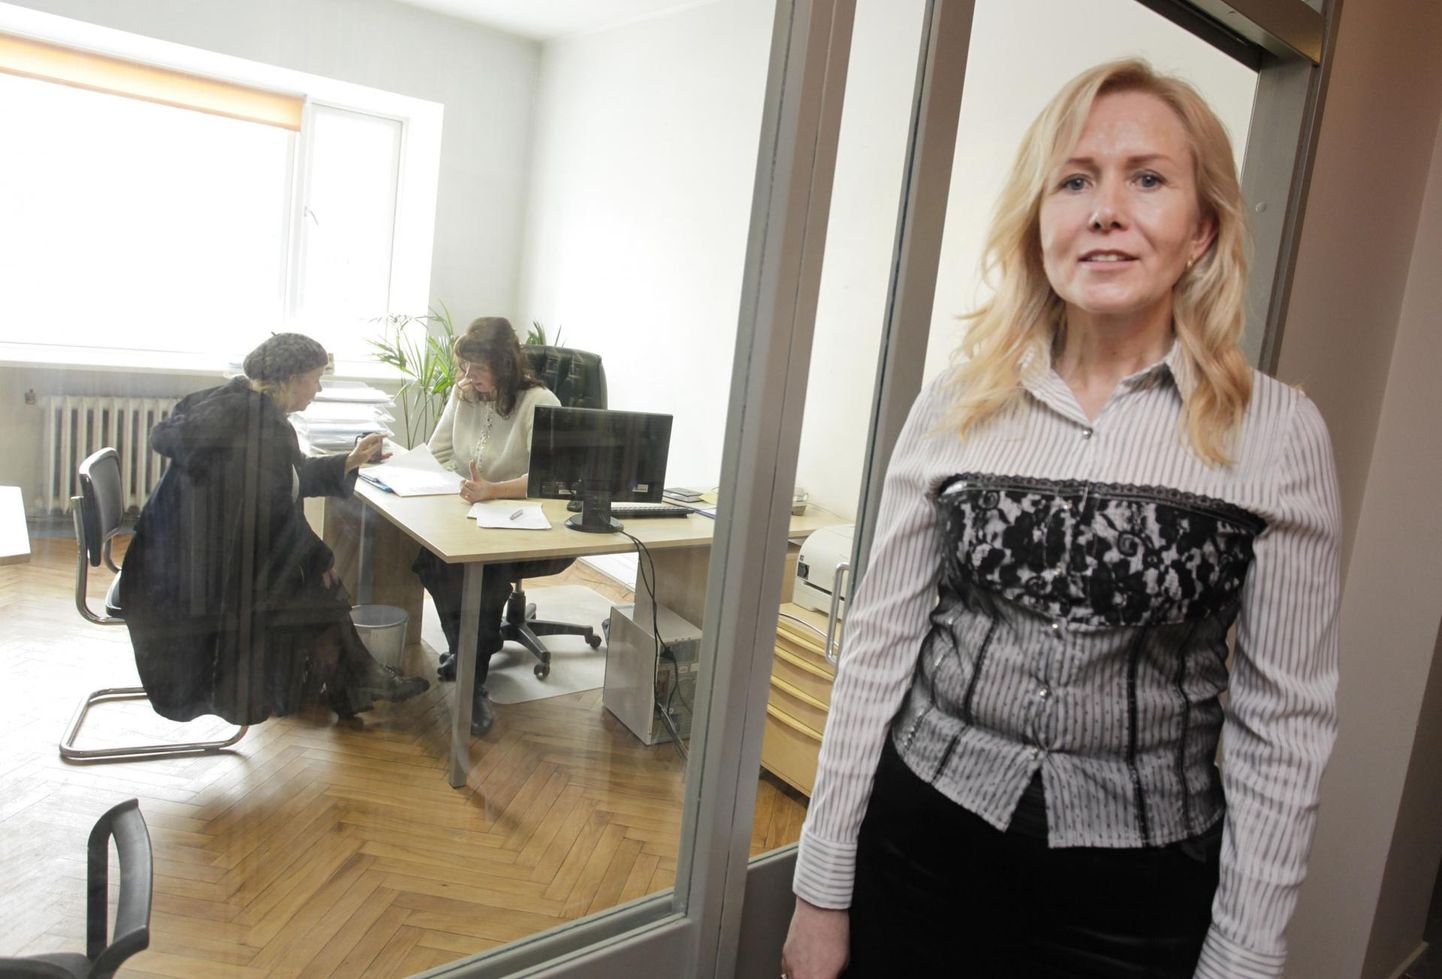 Eesti juristide liidu direktor Krista Paal kinnitas, et Õigusapteegis spetsialistile jagatud info jääb omavahele.